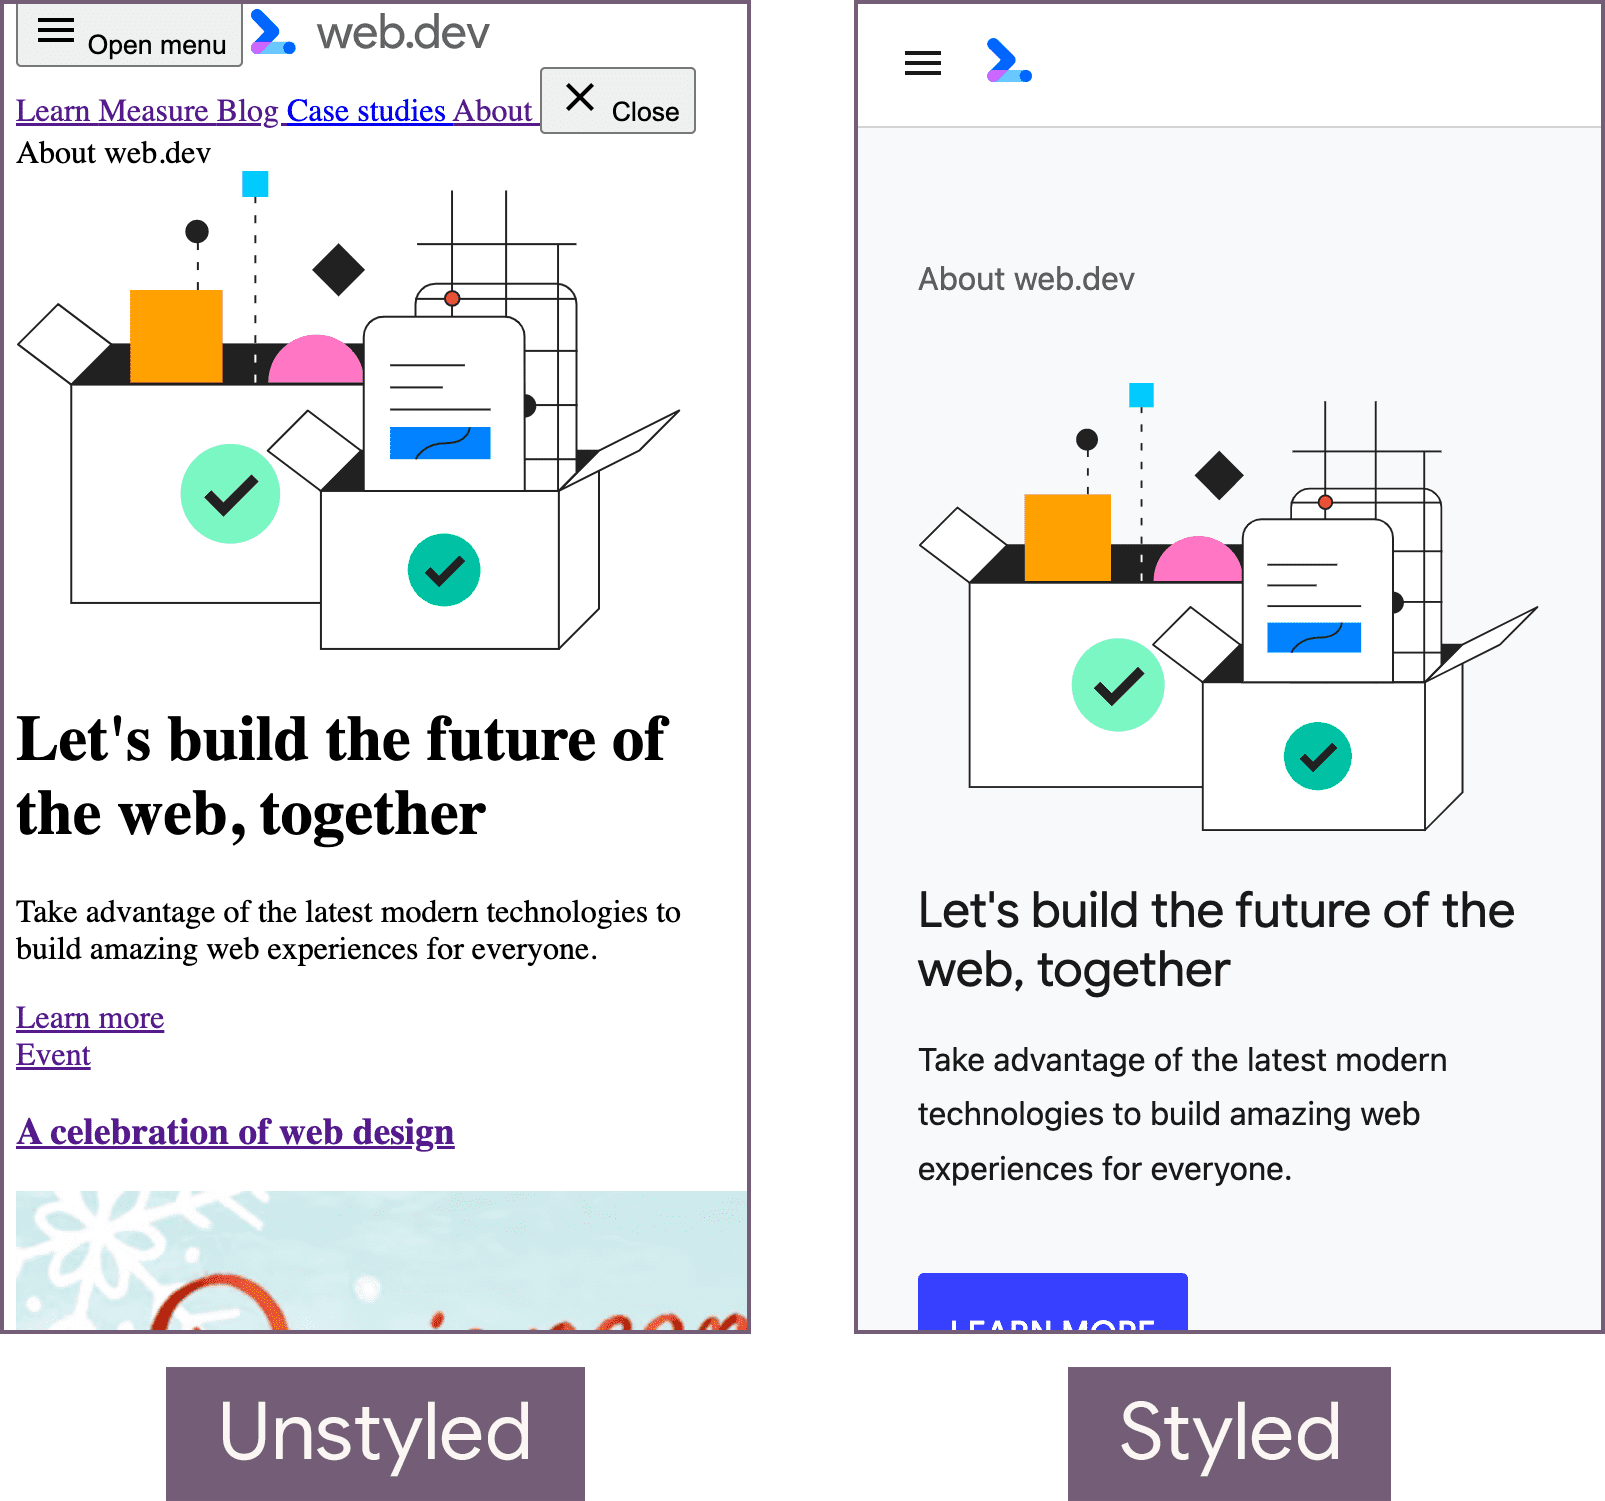 La página principal de web.dev sin diseño (izquierda) y el estado con diseño (derecha).